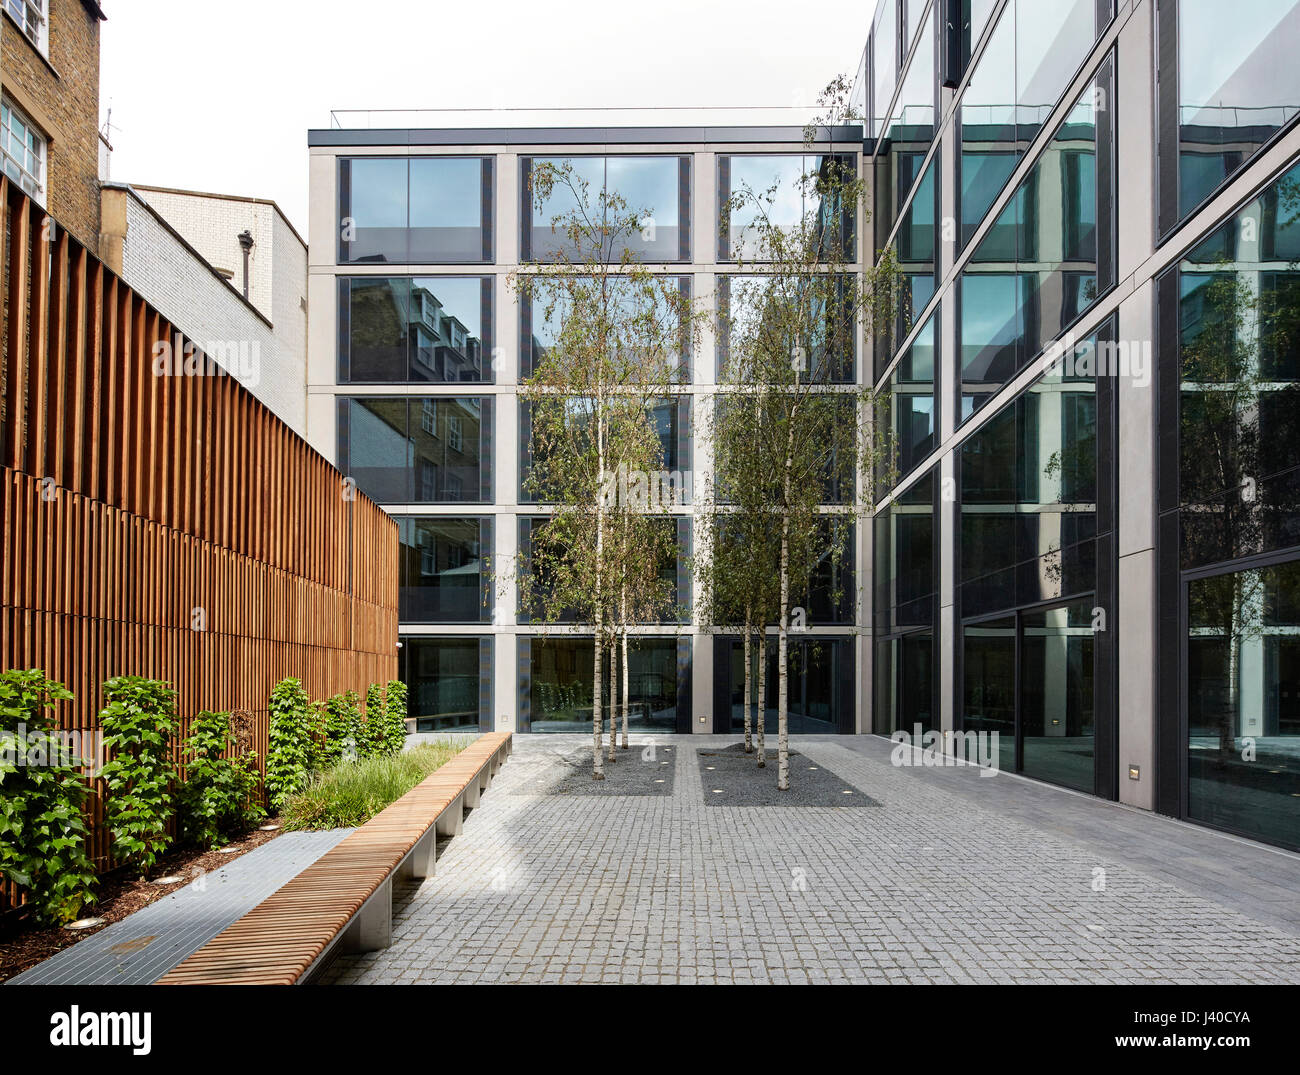 Landschaftlich gestalteten Garten im Innenhof. Chancery Lane, London, Vereinigtes Königreich. Architekt: Bennetts Associates Architekten, 2015. Stockfoto